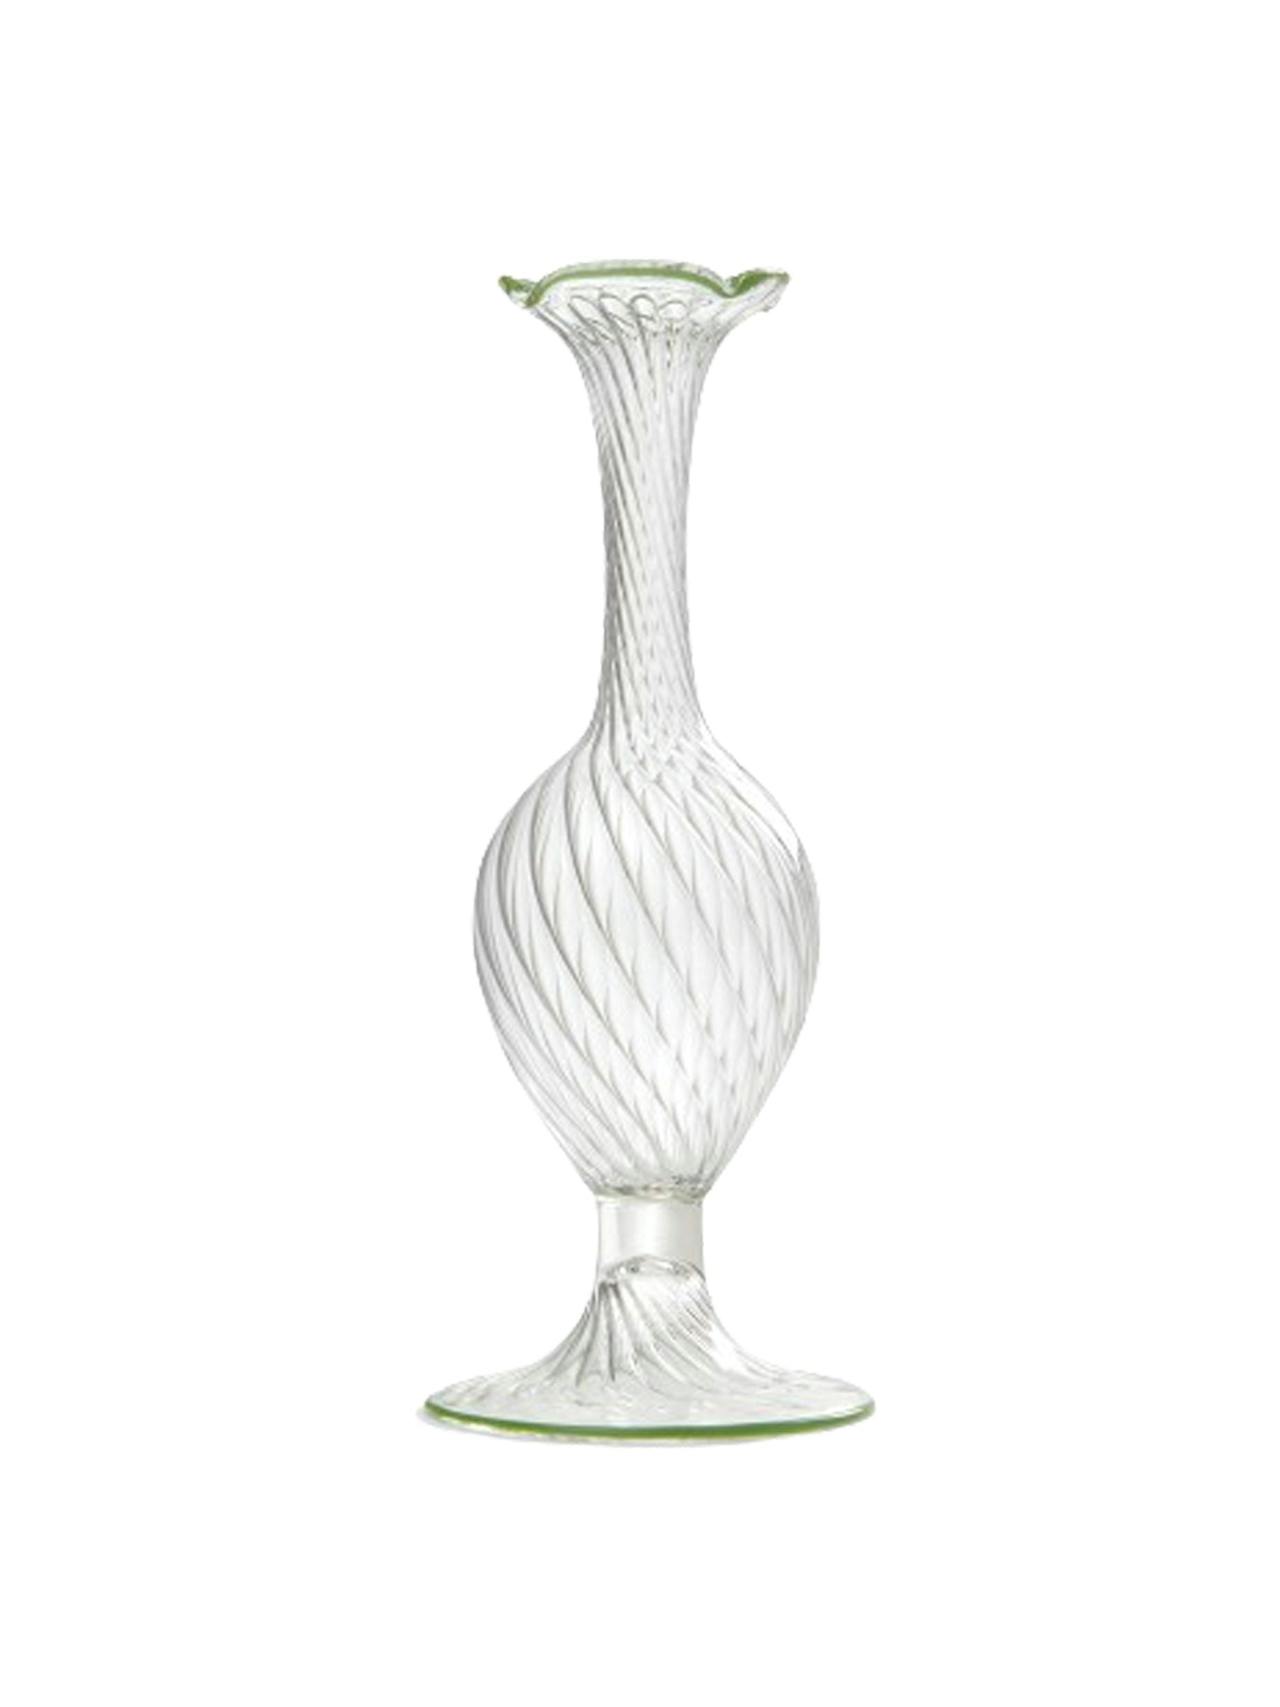 Murano bud vase in green